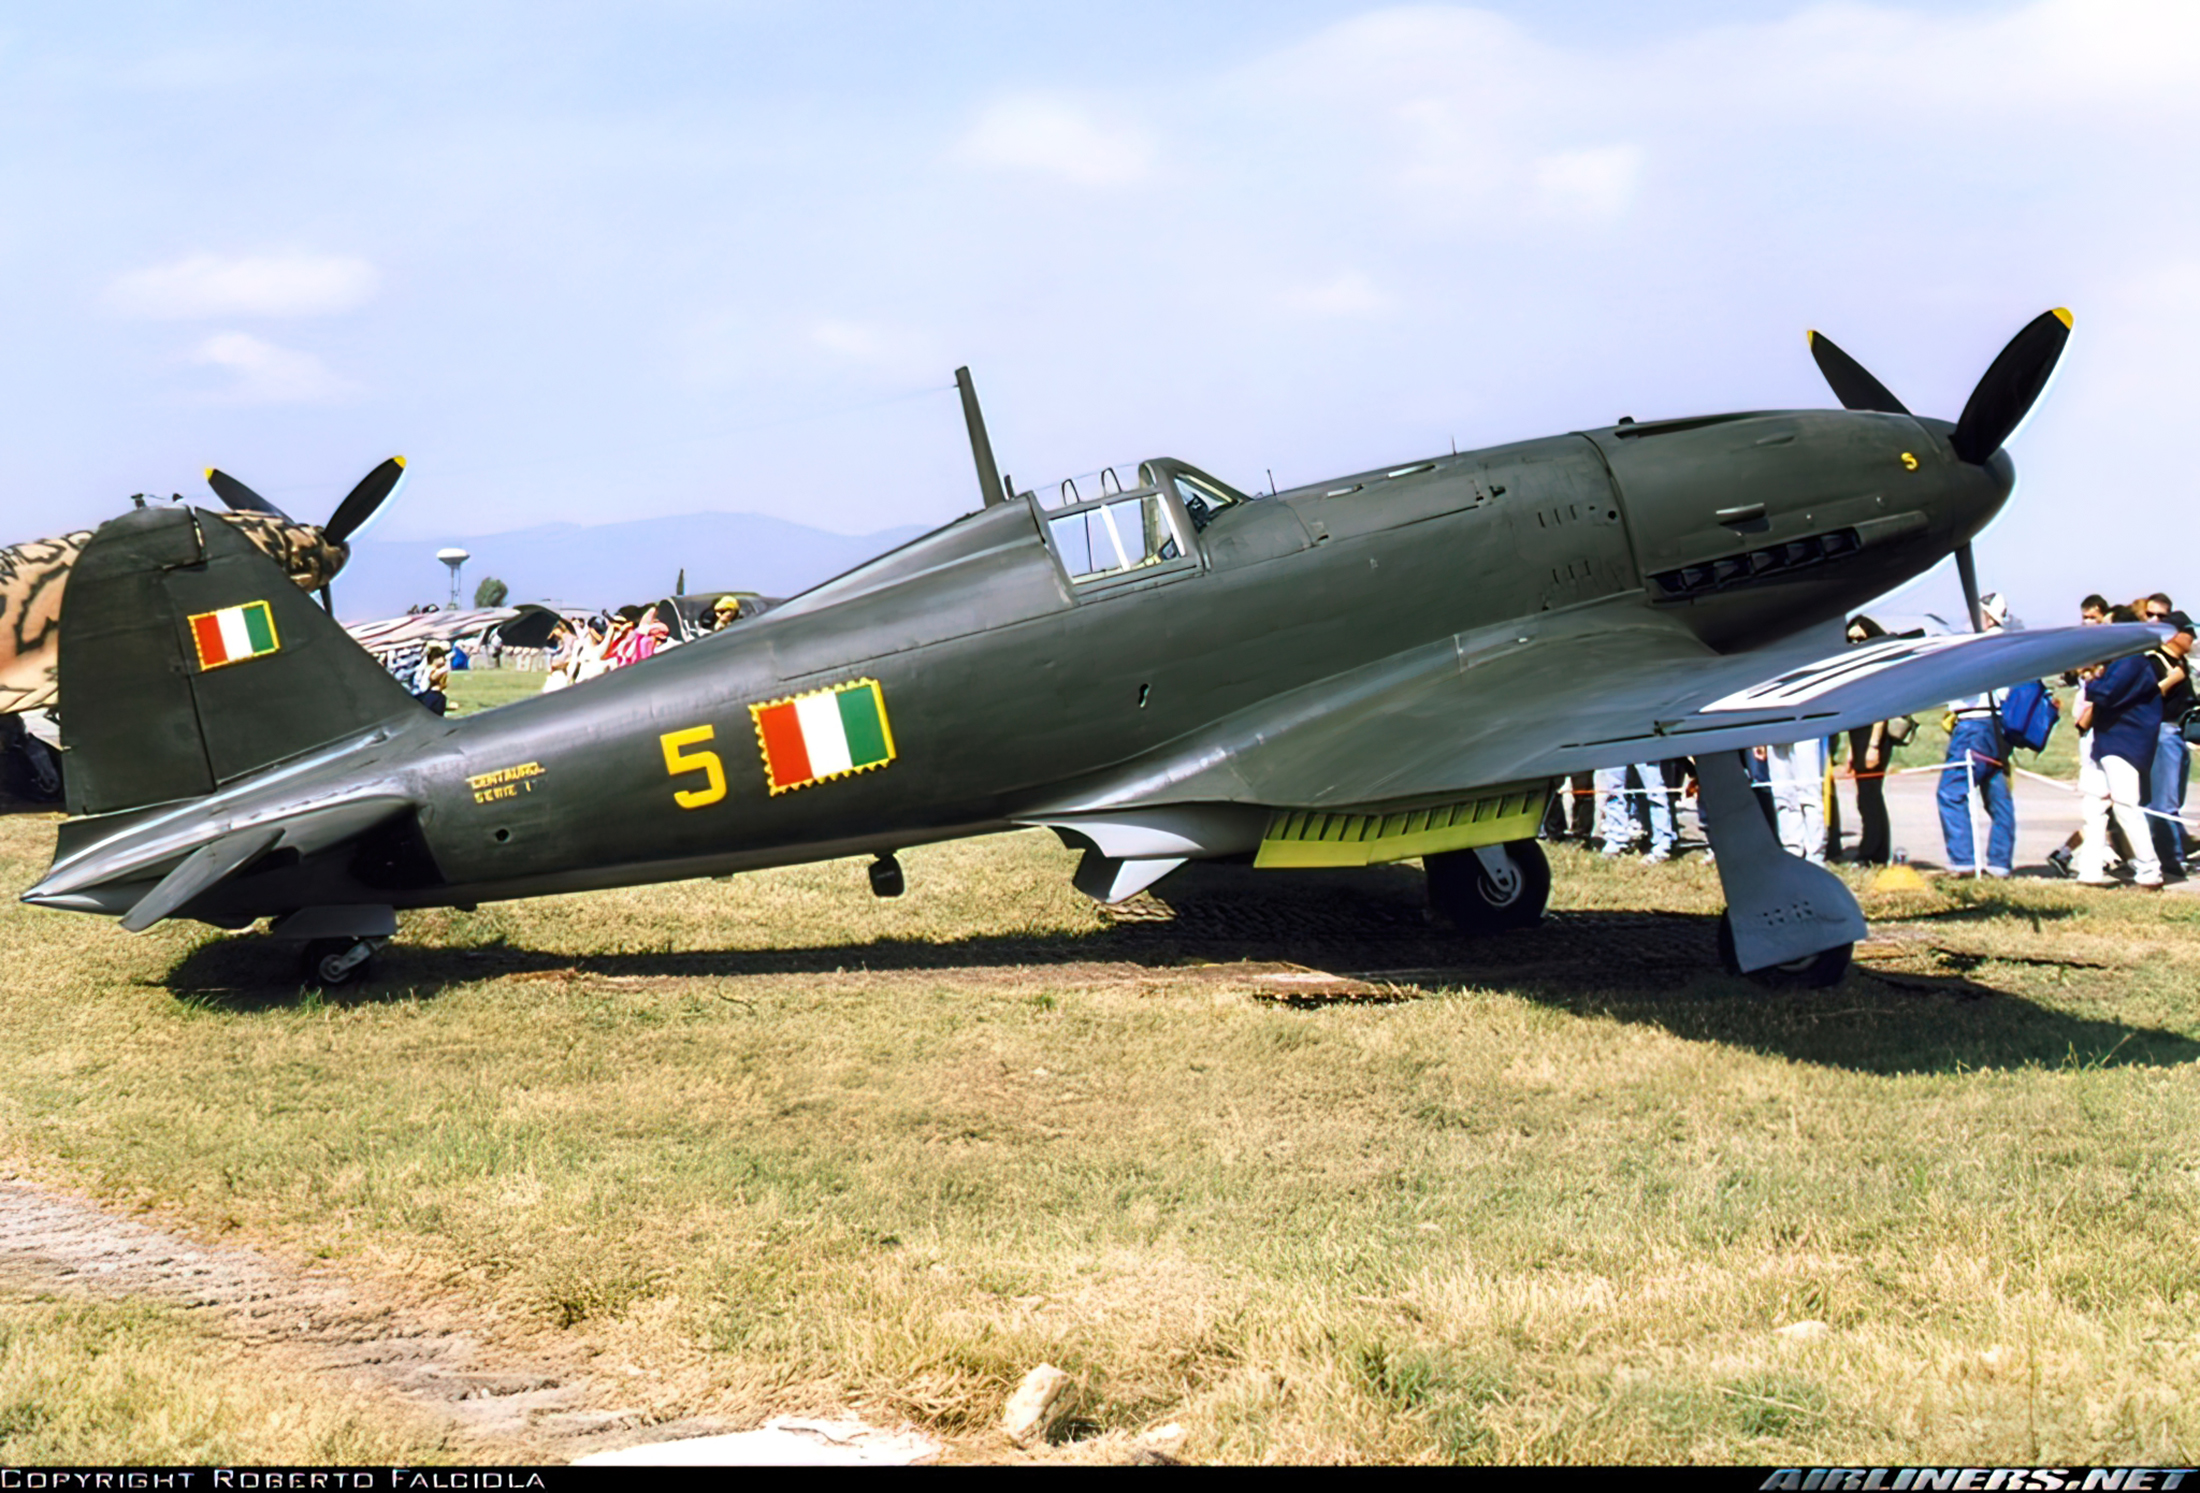 ANR Aeronautica Nazionale Repubblicana Fiat G55 Centauro 2 Gruppo 2 Squadriglia Yellow 5 Cascina presevered 01